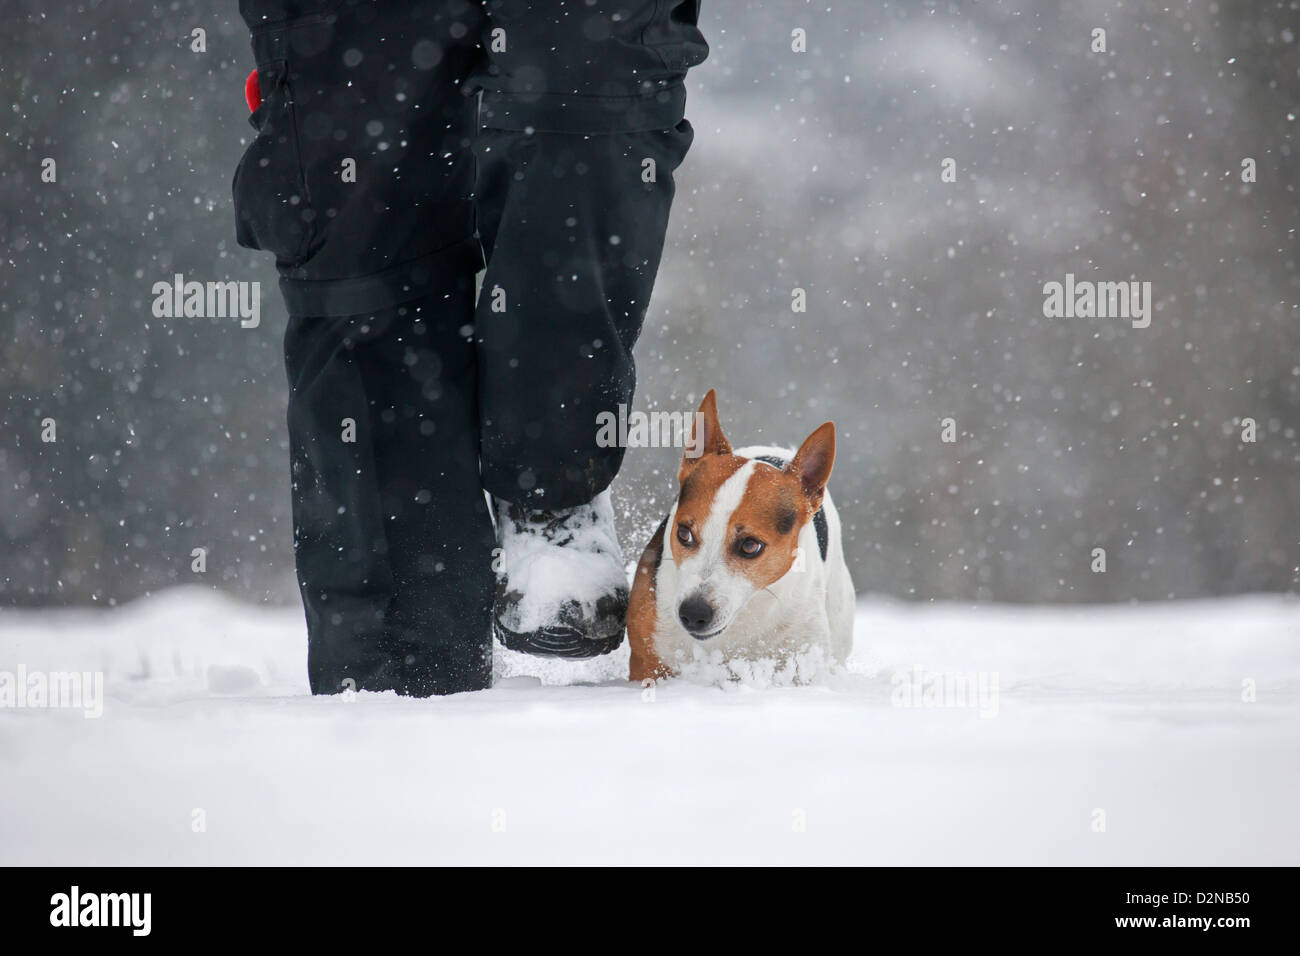 Jack Russell Terrier dog walking avec propriétaire dans la neige durant l'hiver dans la neige Banque D'Images